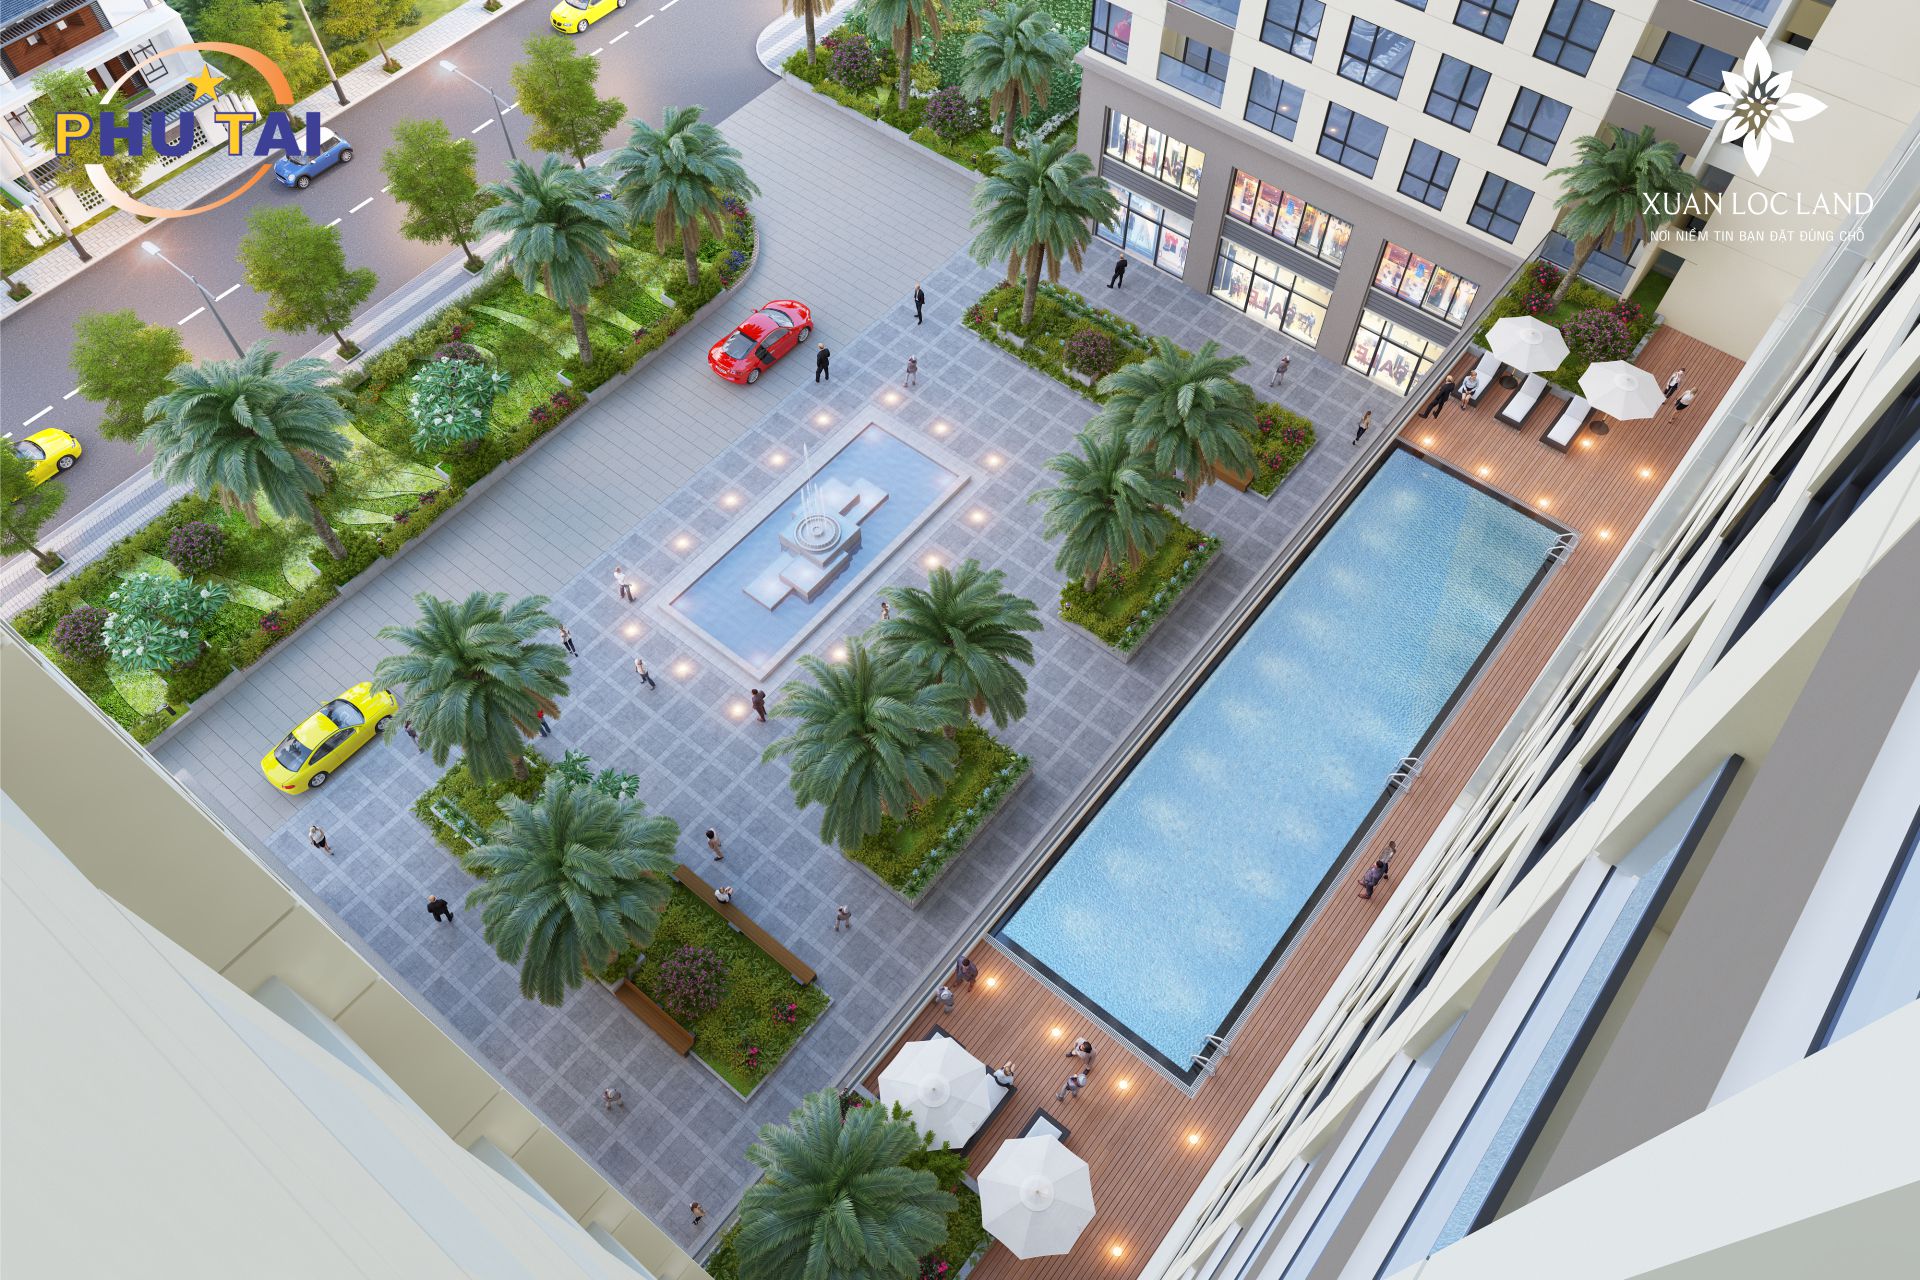 Chung cư Phú Tài Residence là  nơi đáng sống và đầu tư sinh lời.Giá căn hộ giai đoạn 1 rơi vào   23- 29 tr/m2 sổ đỏ vĩnh viễn,PKD 0905733896